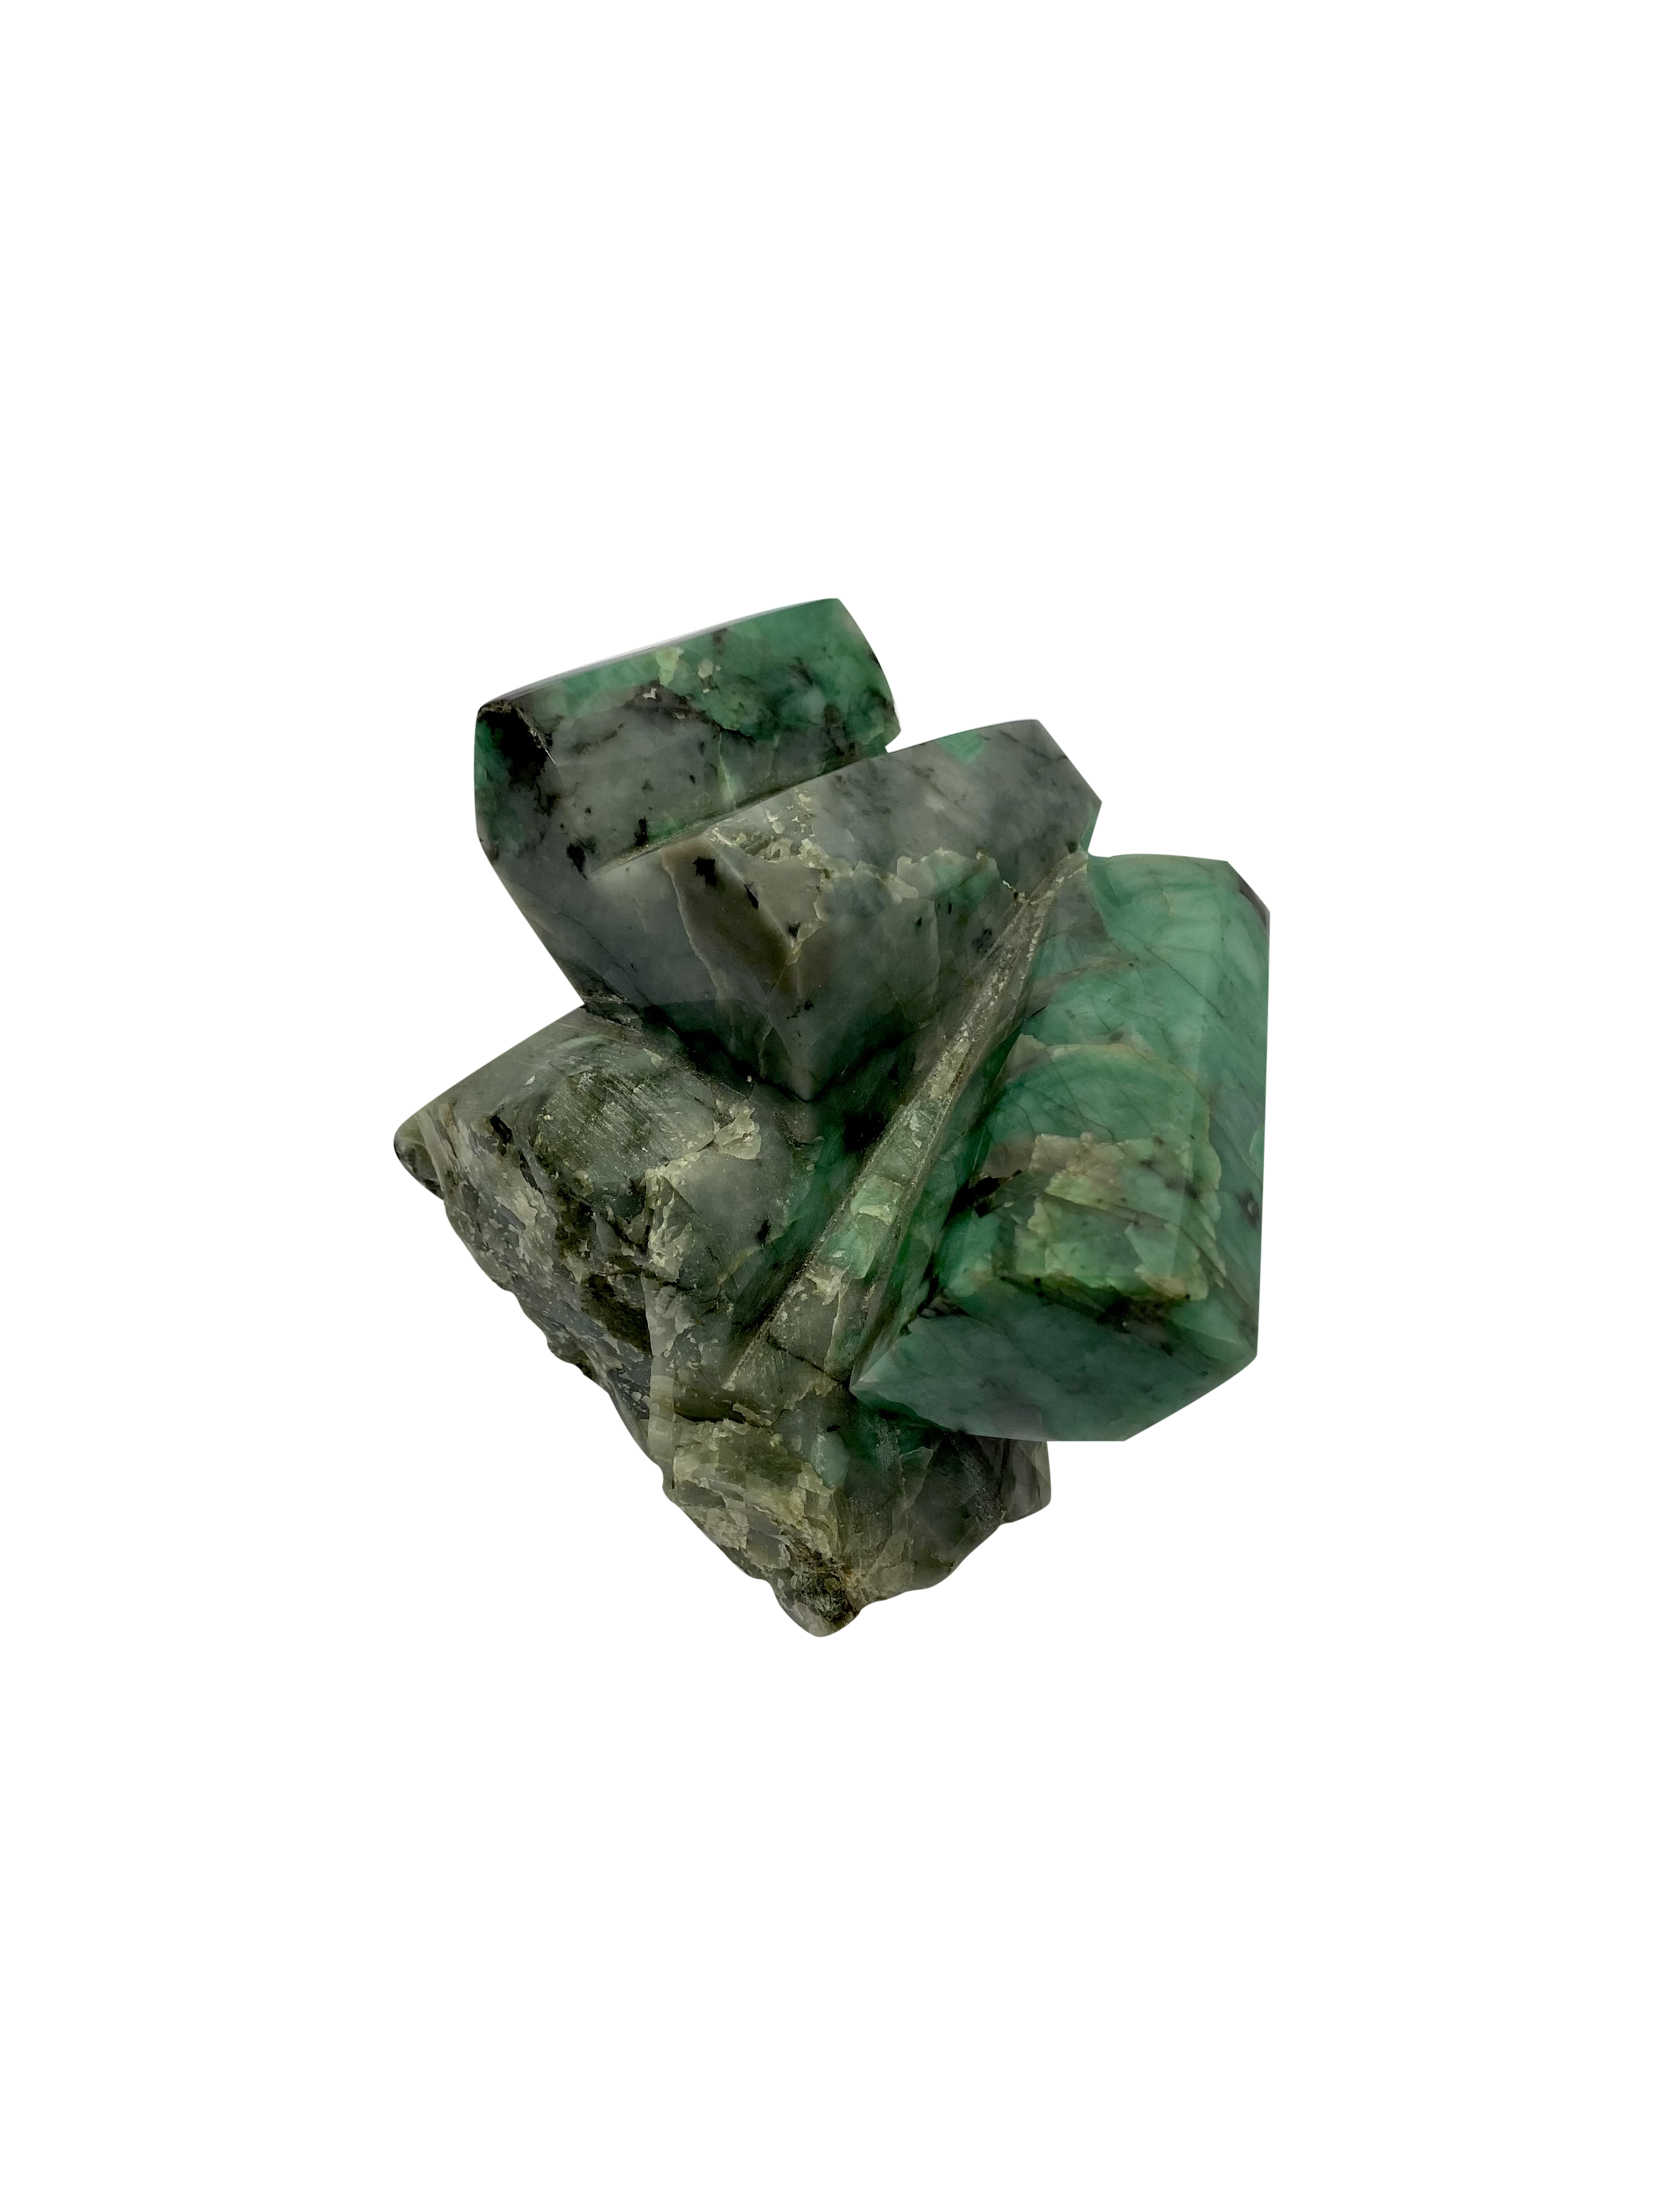 Natural Emerald on Matrix - Polished Large Emerald Stone C